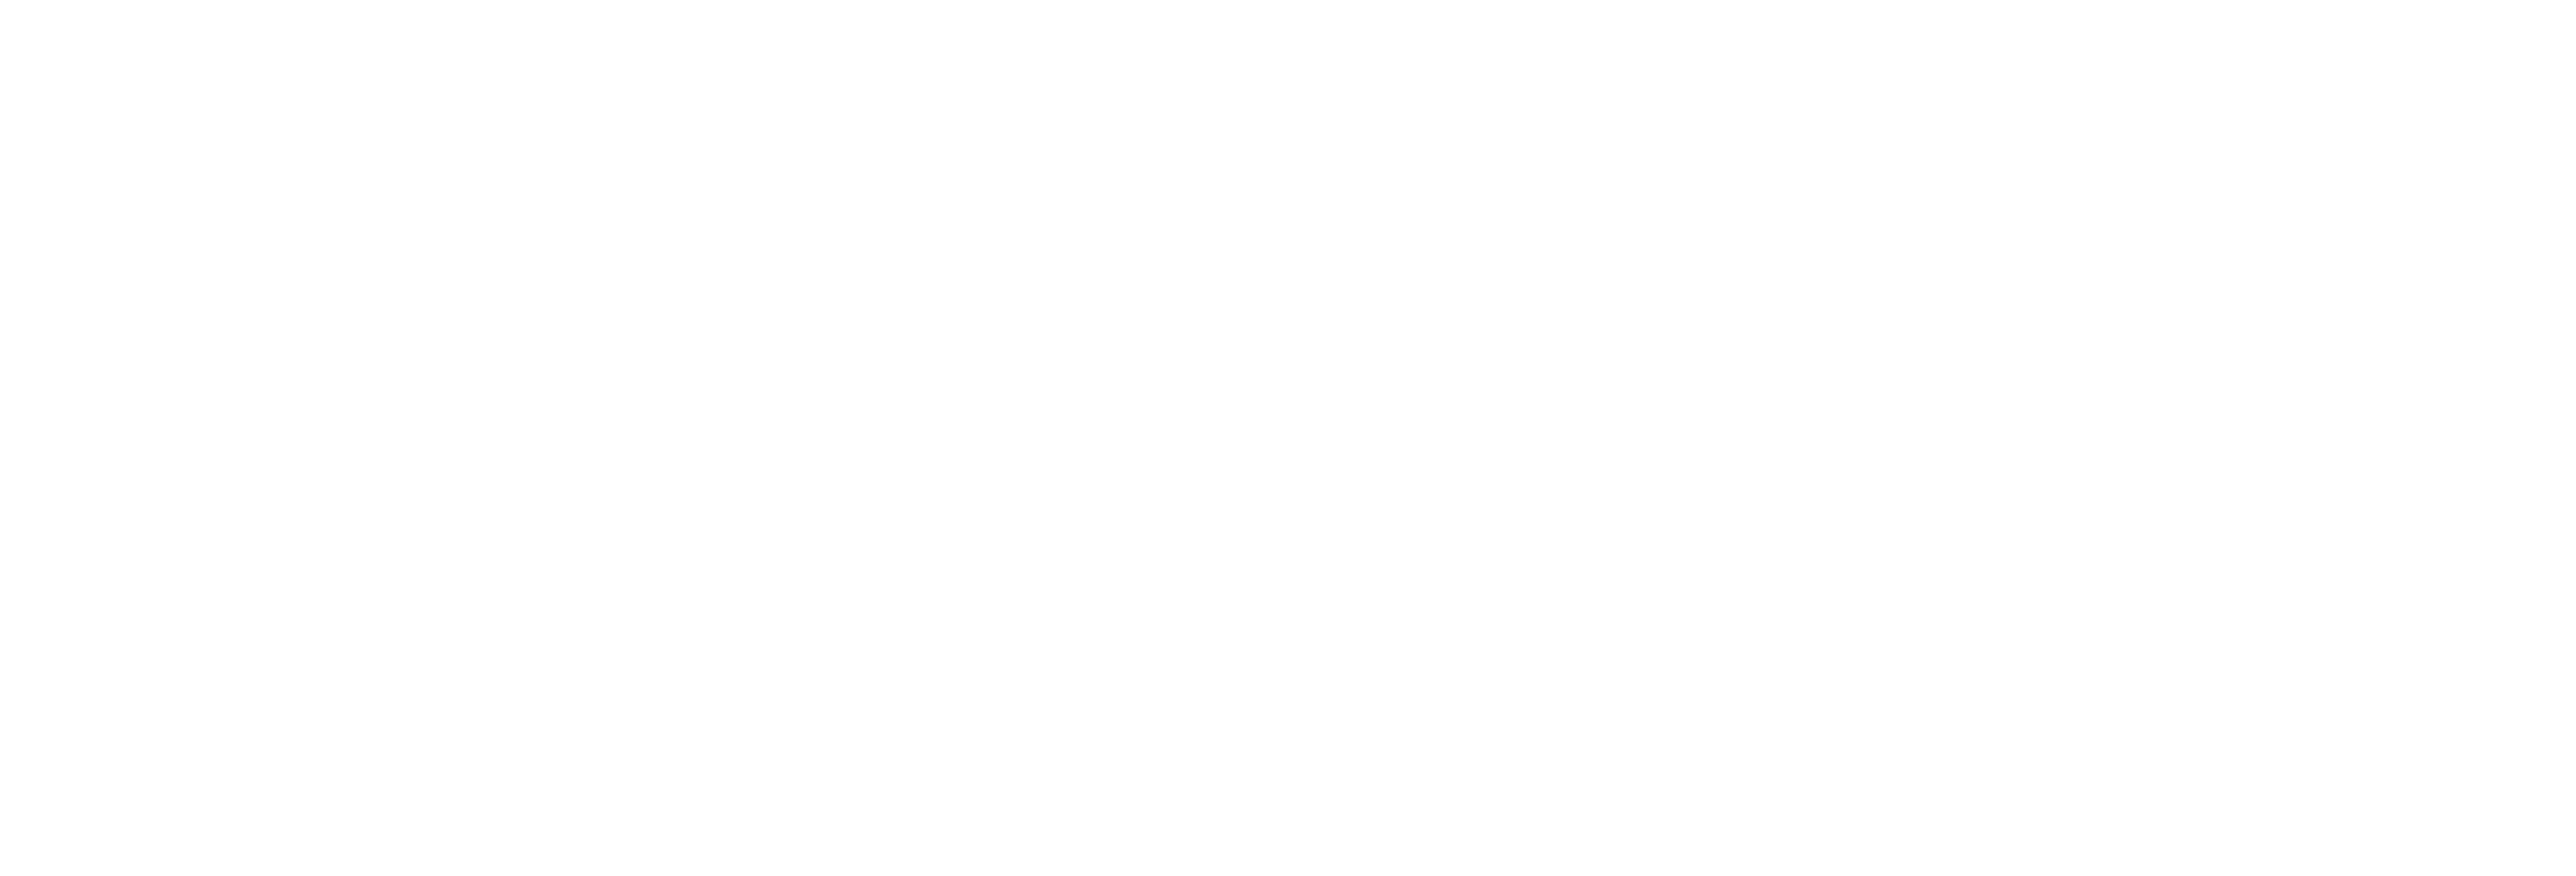 TD Solar Group